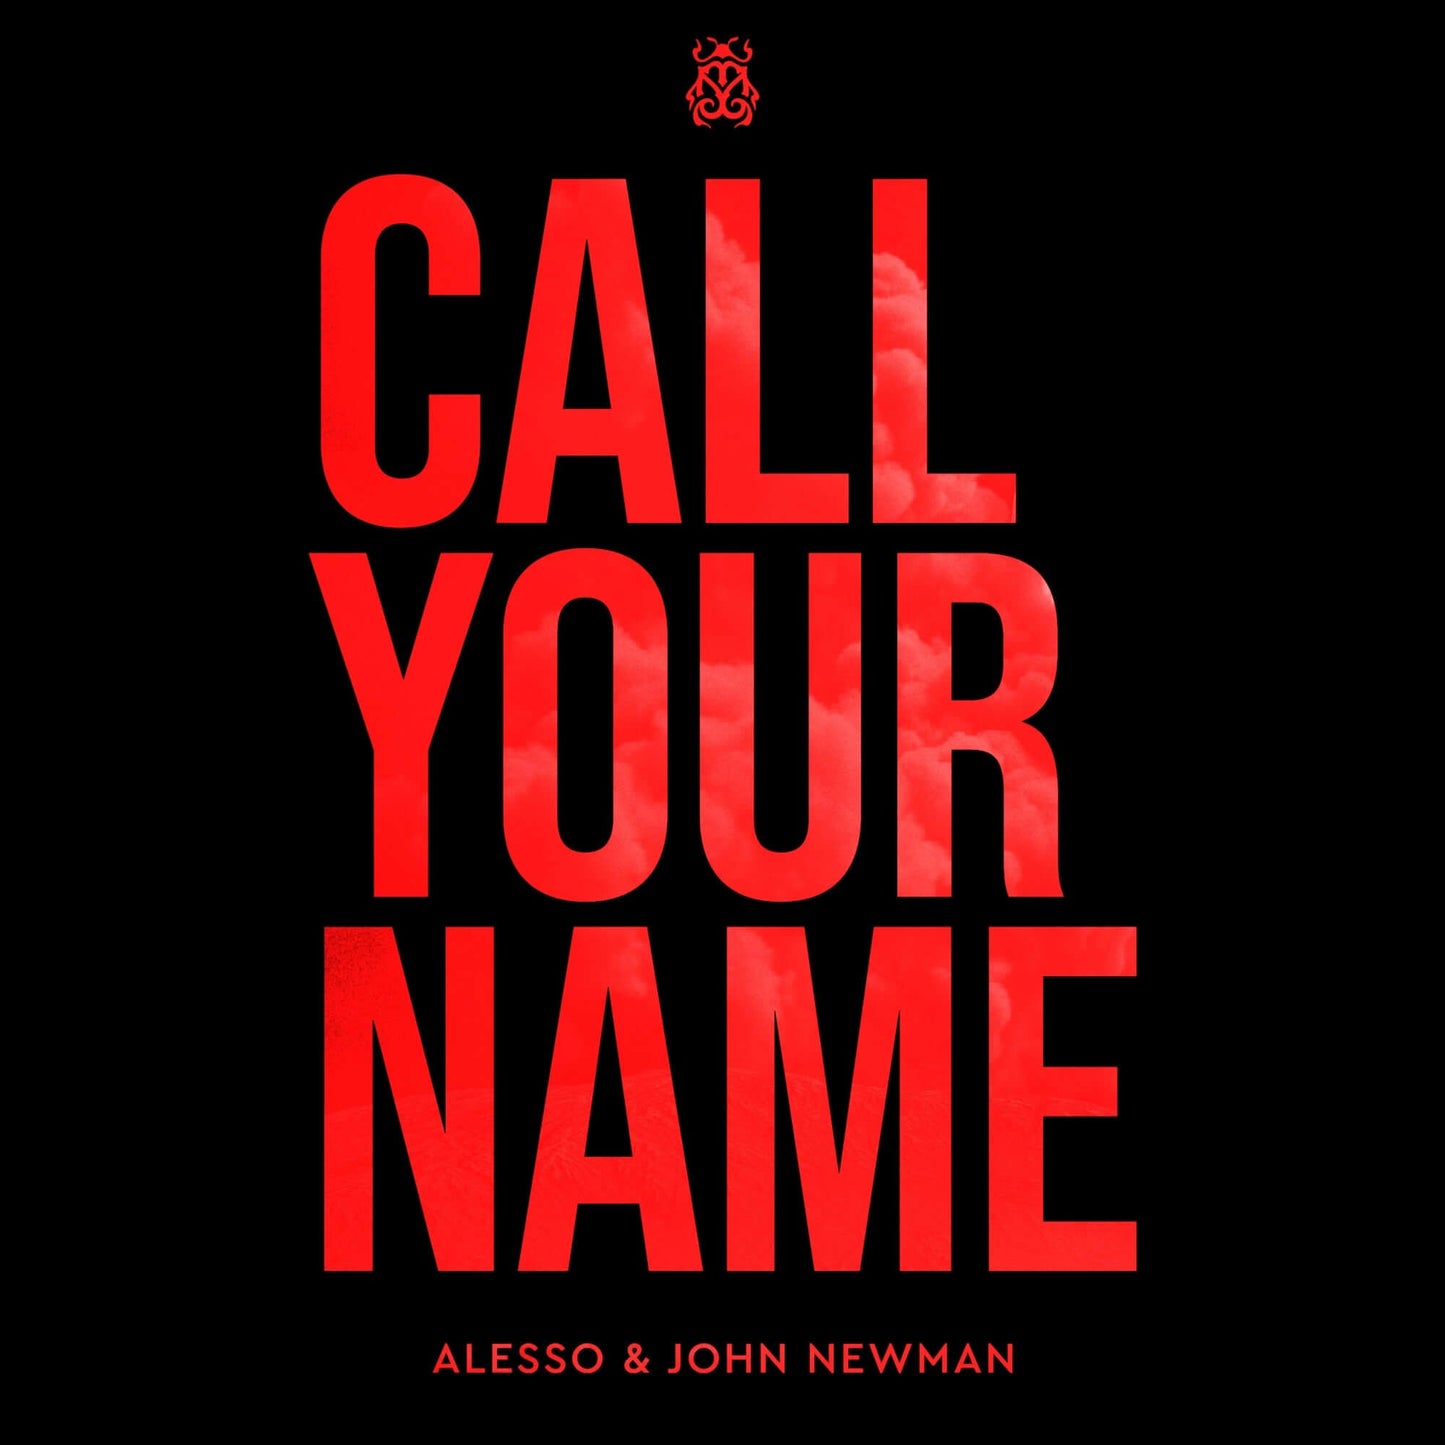 Alesso & John Newman - Call Your Name (Studio Acapella)